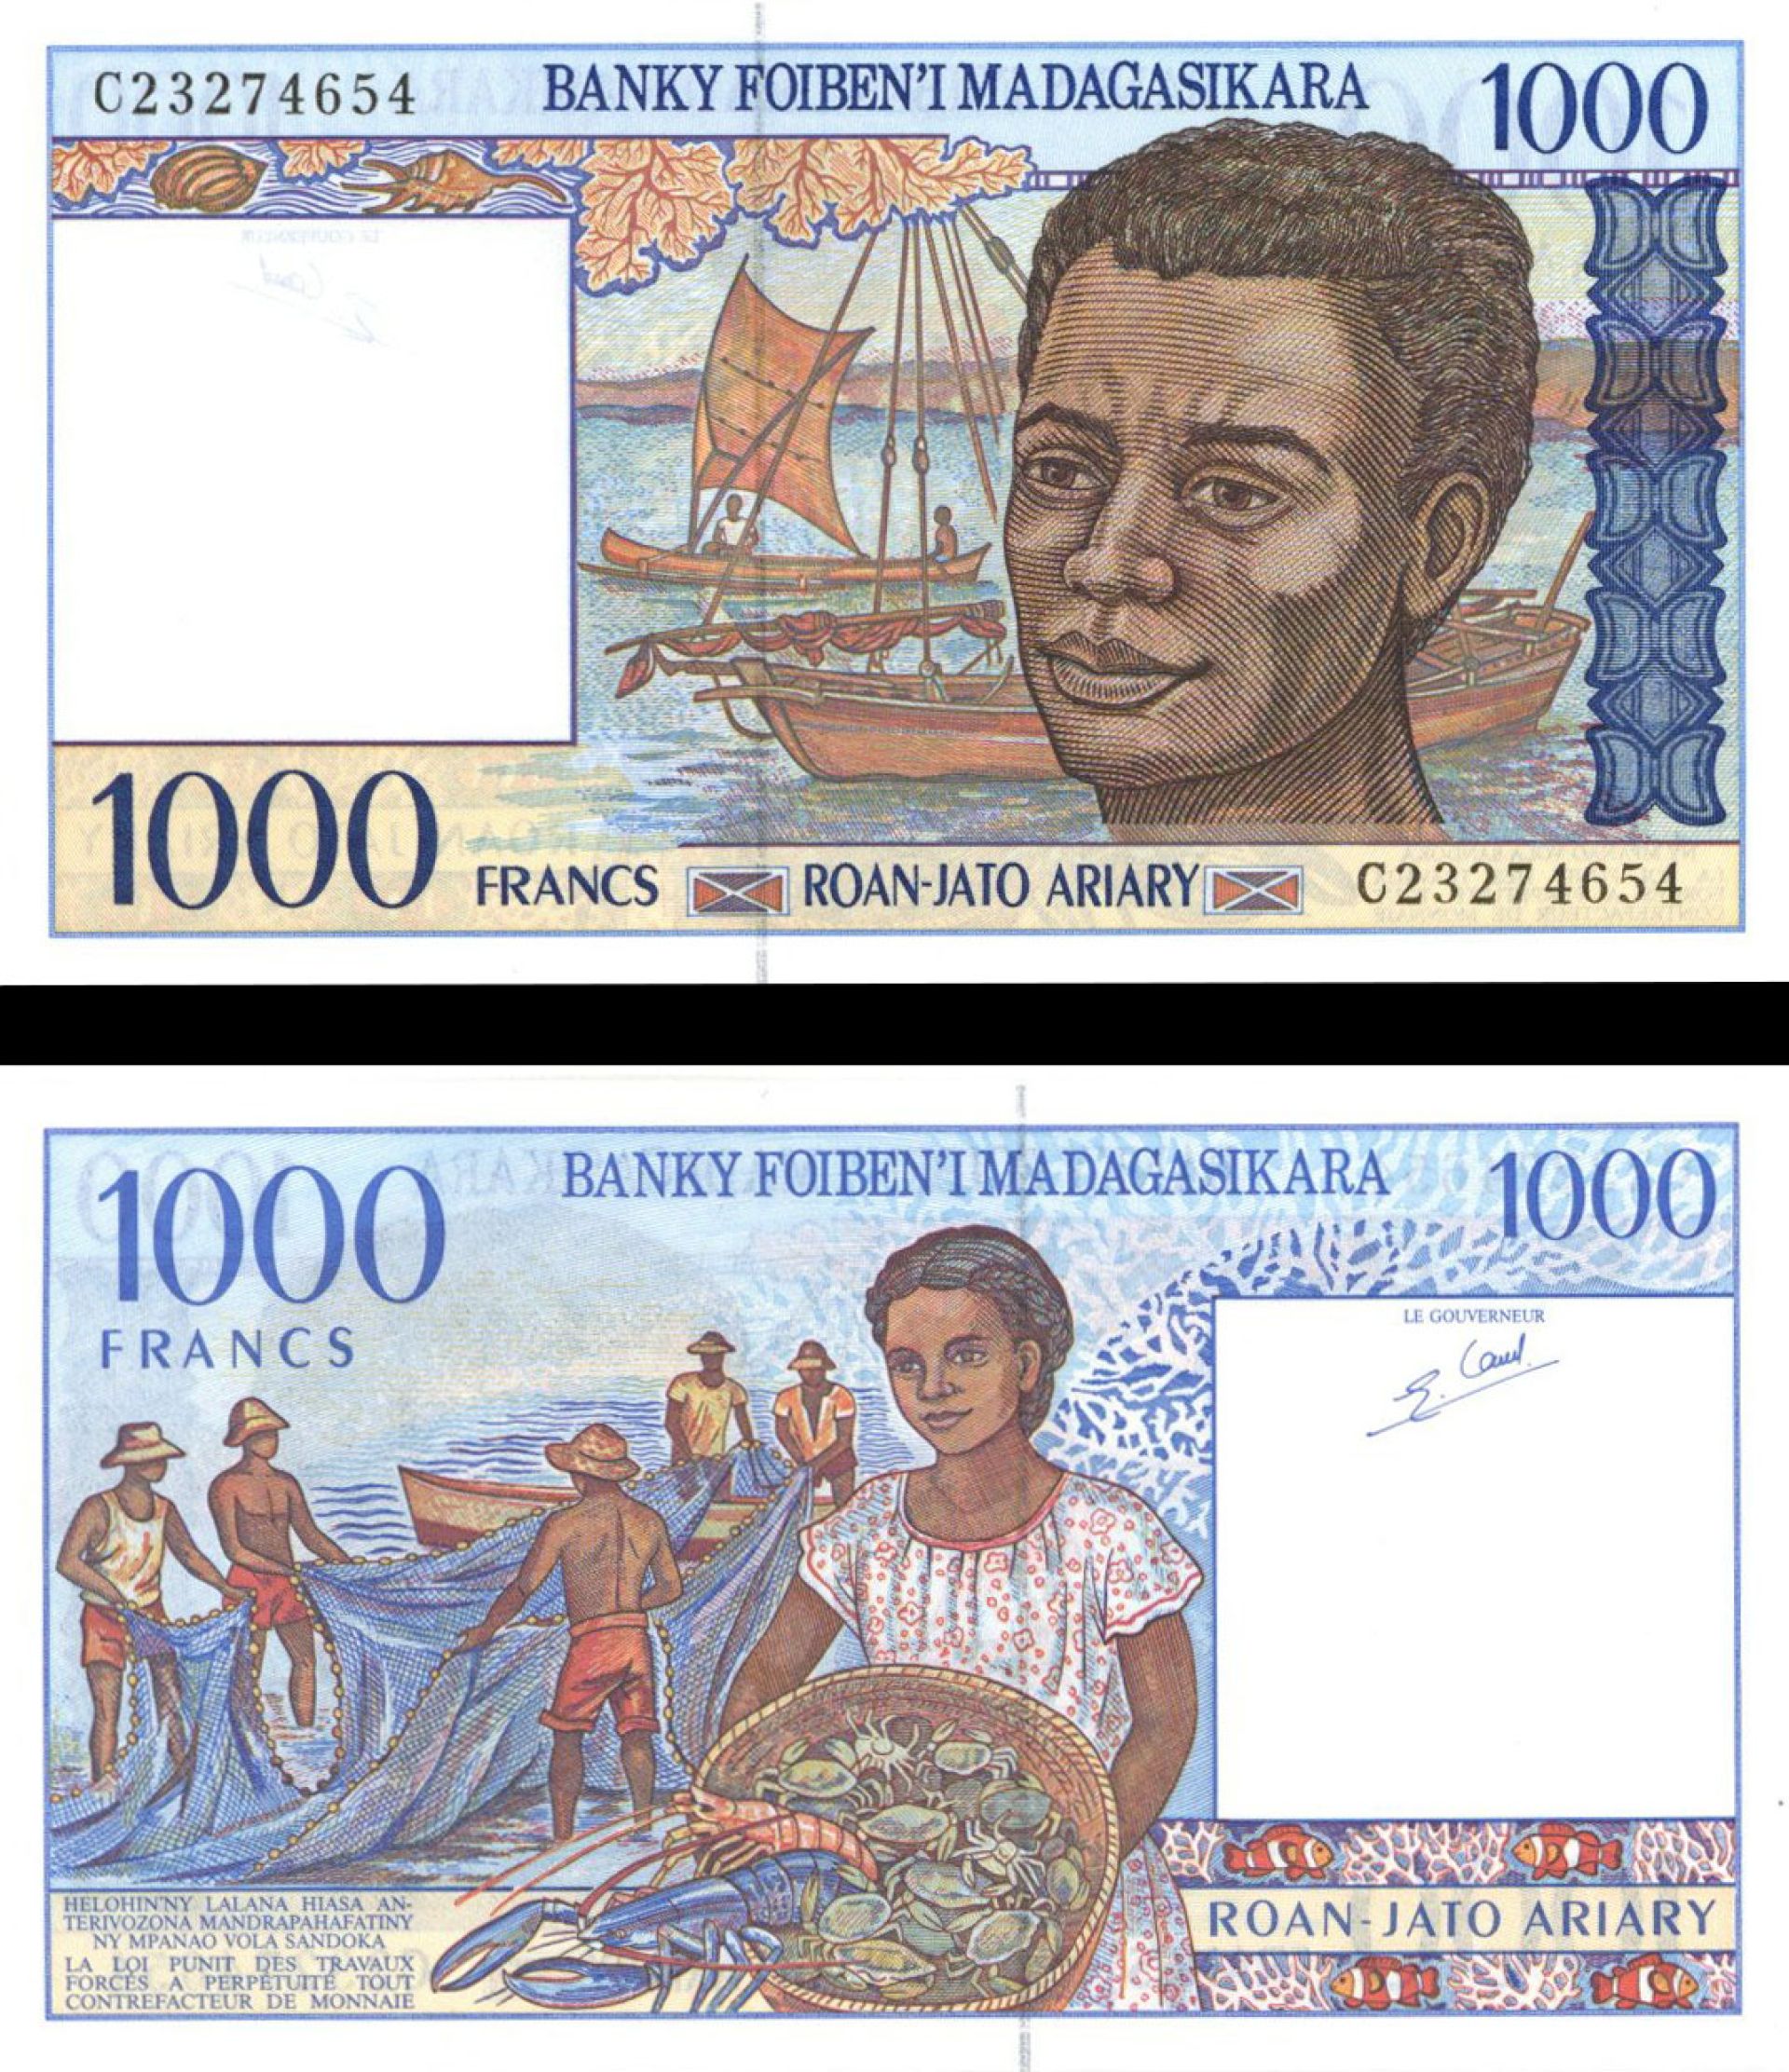 Madagascar - P-76 - Foreign Paper Money